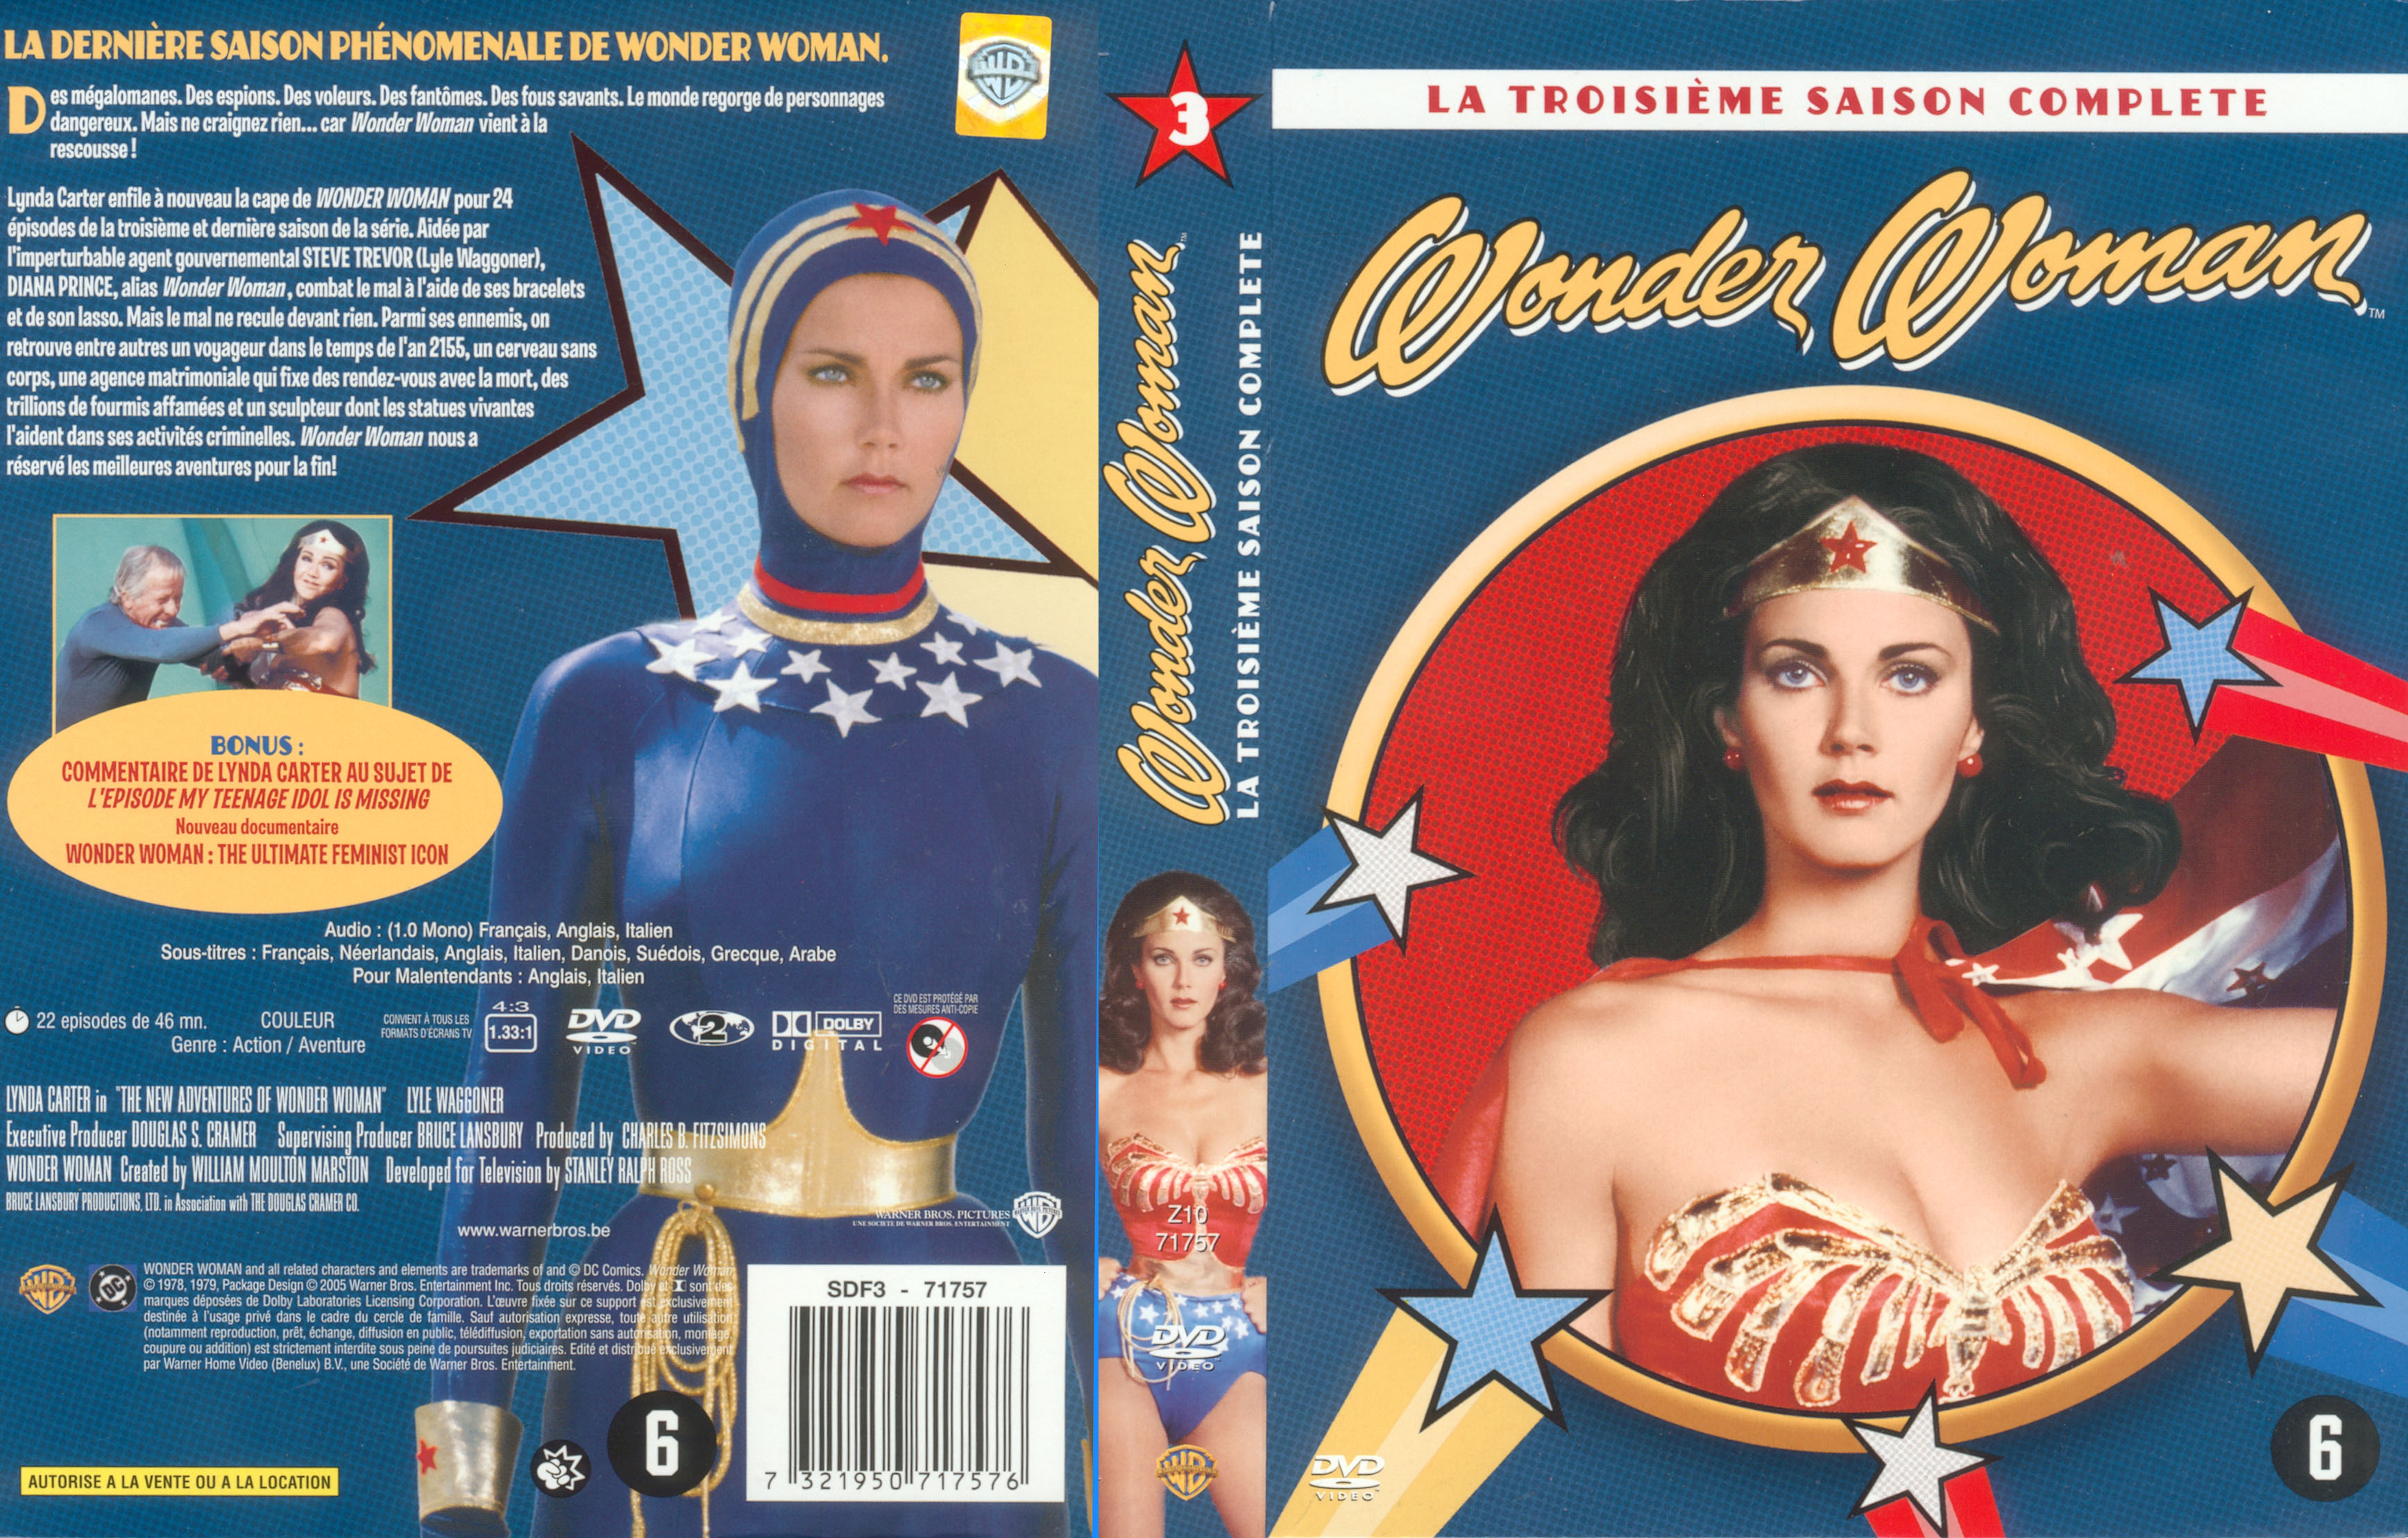 Jaquette DVD Wonder Woman saison 3